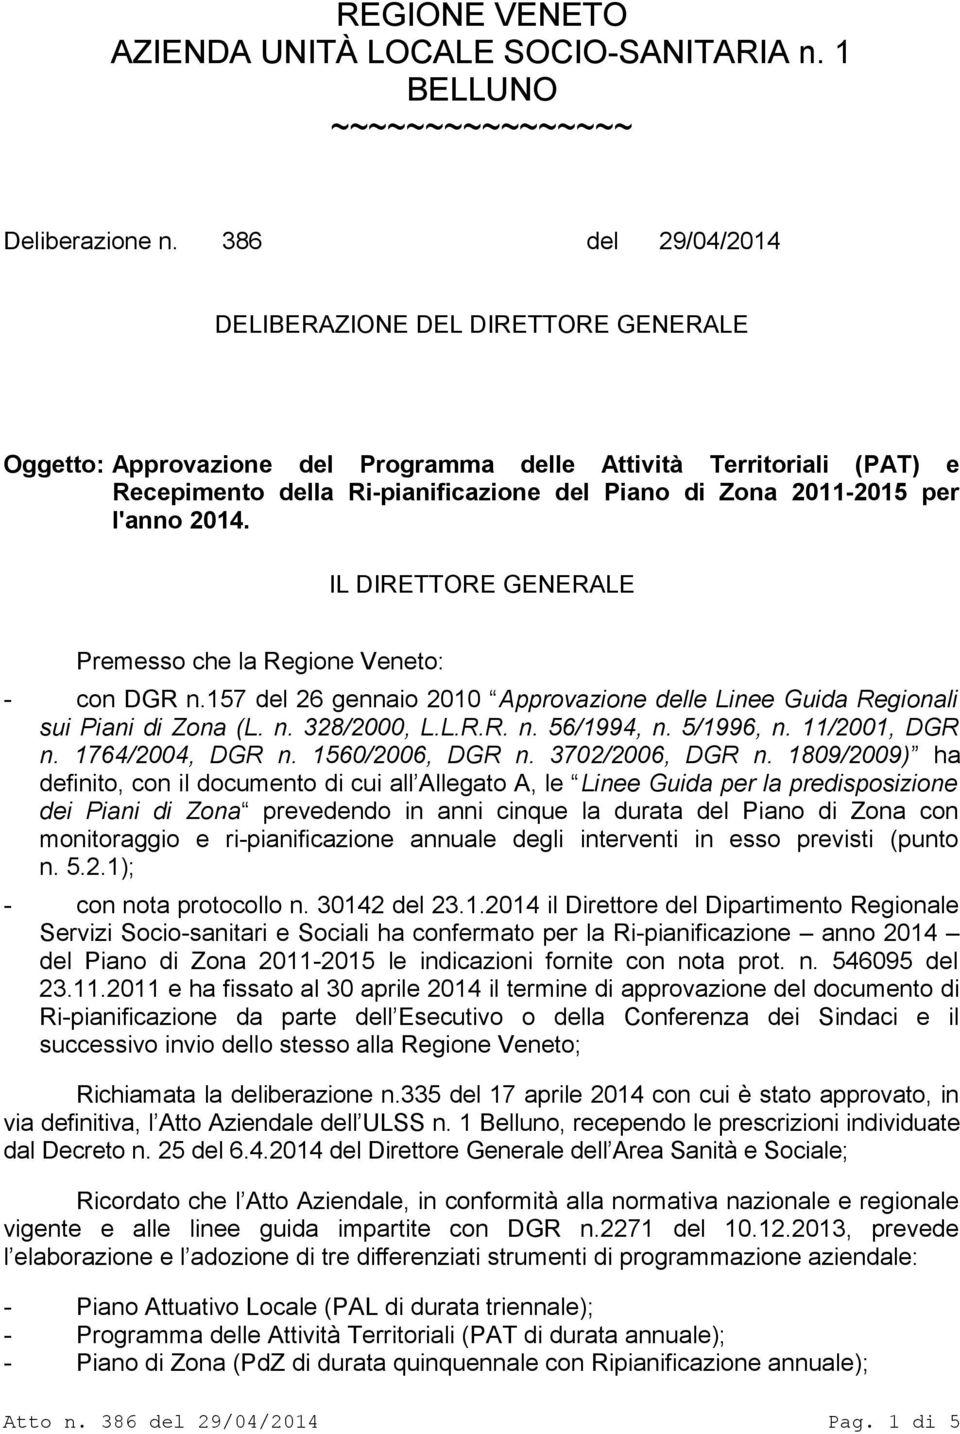 l'anno 2014. IL DIRETTORE GENERALE Premesso che la Regione Veneto: - con DGR n.157 del 26 gennaio 2010 Approvazione delle Linee Guida Regionali sui Piani di Zona (L. n. 328/2000, L.L.R.R. n. 56/1994, n.